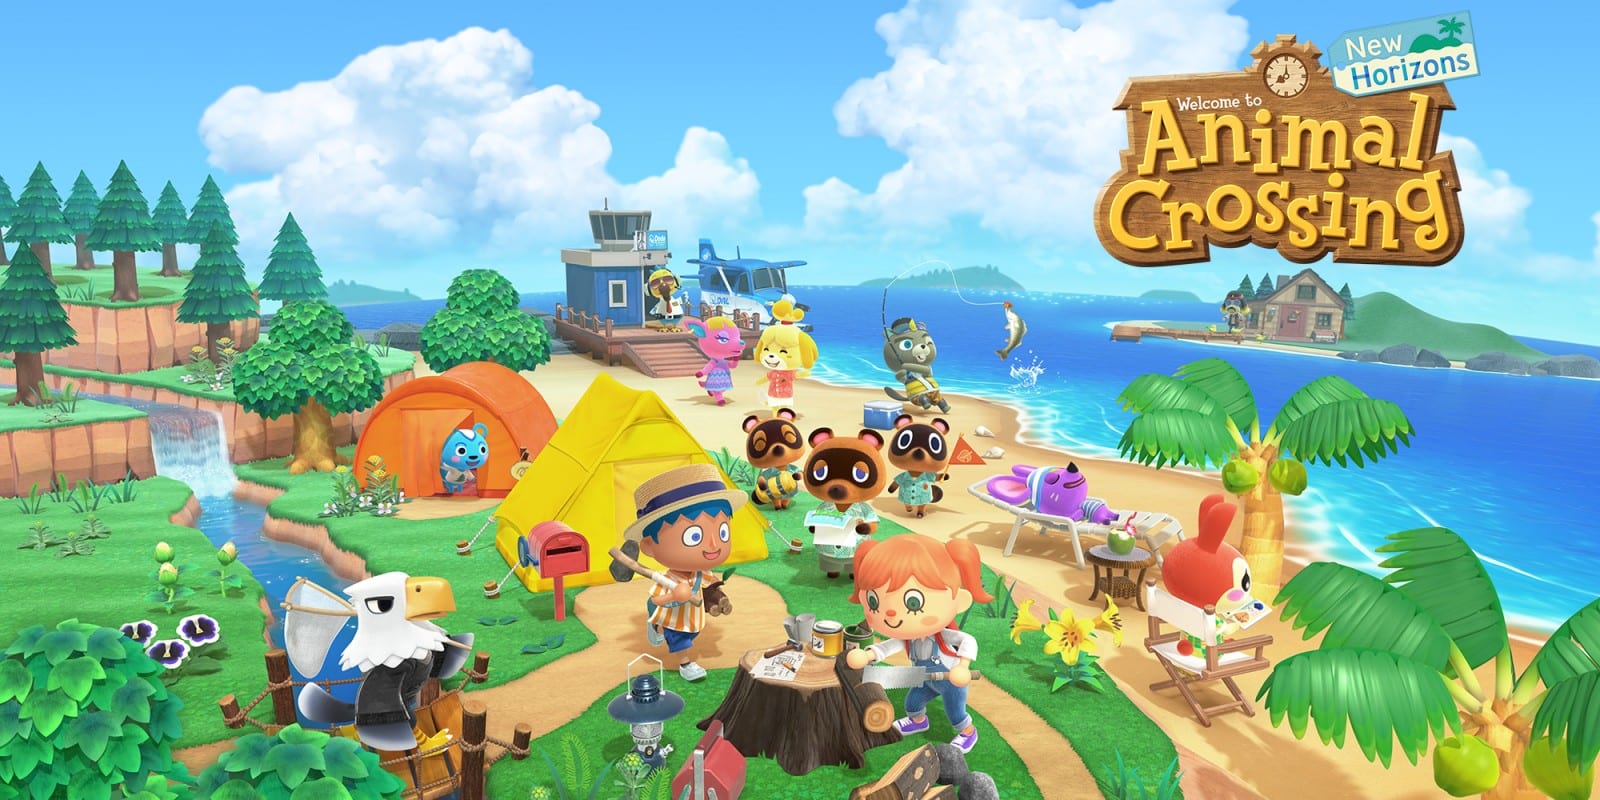  Animal Crossing, sognare un mondo felice con un videogame